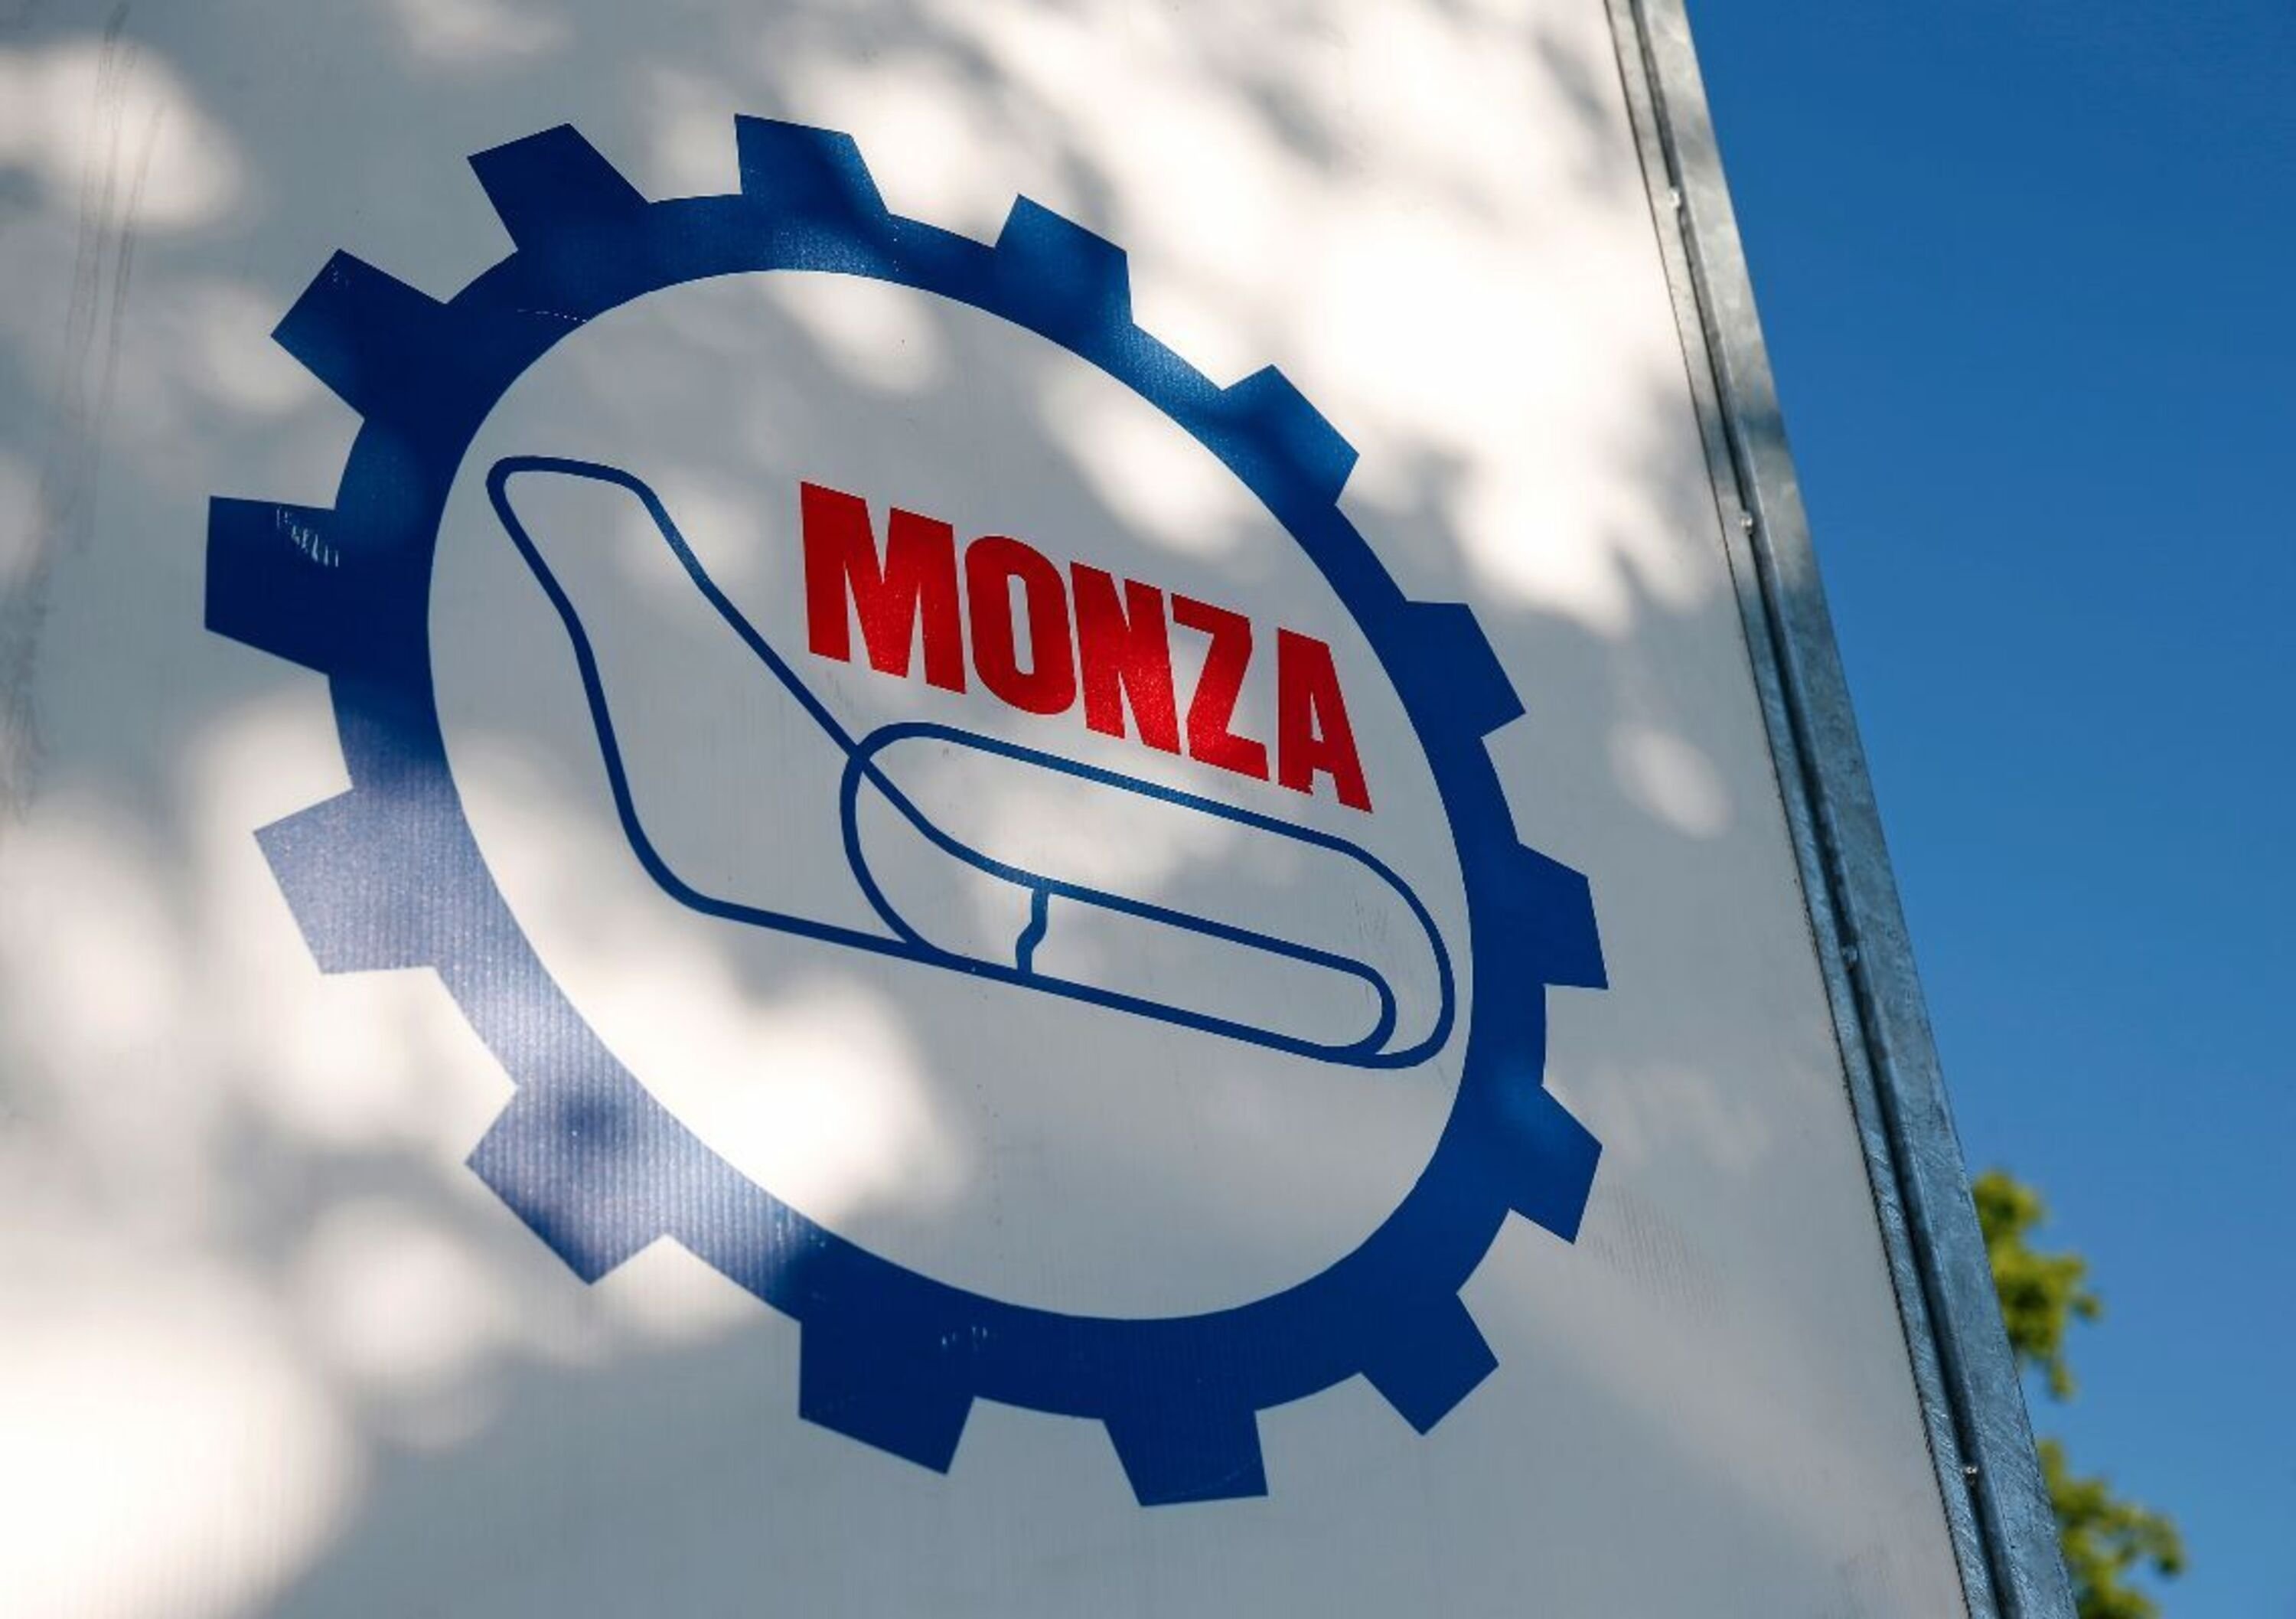 DTM 2020, la tappa a Monza dal 26 al 28 giugno